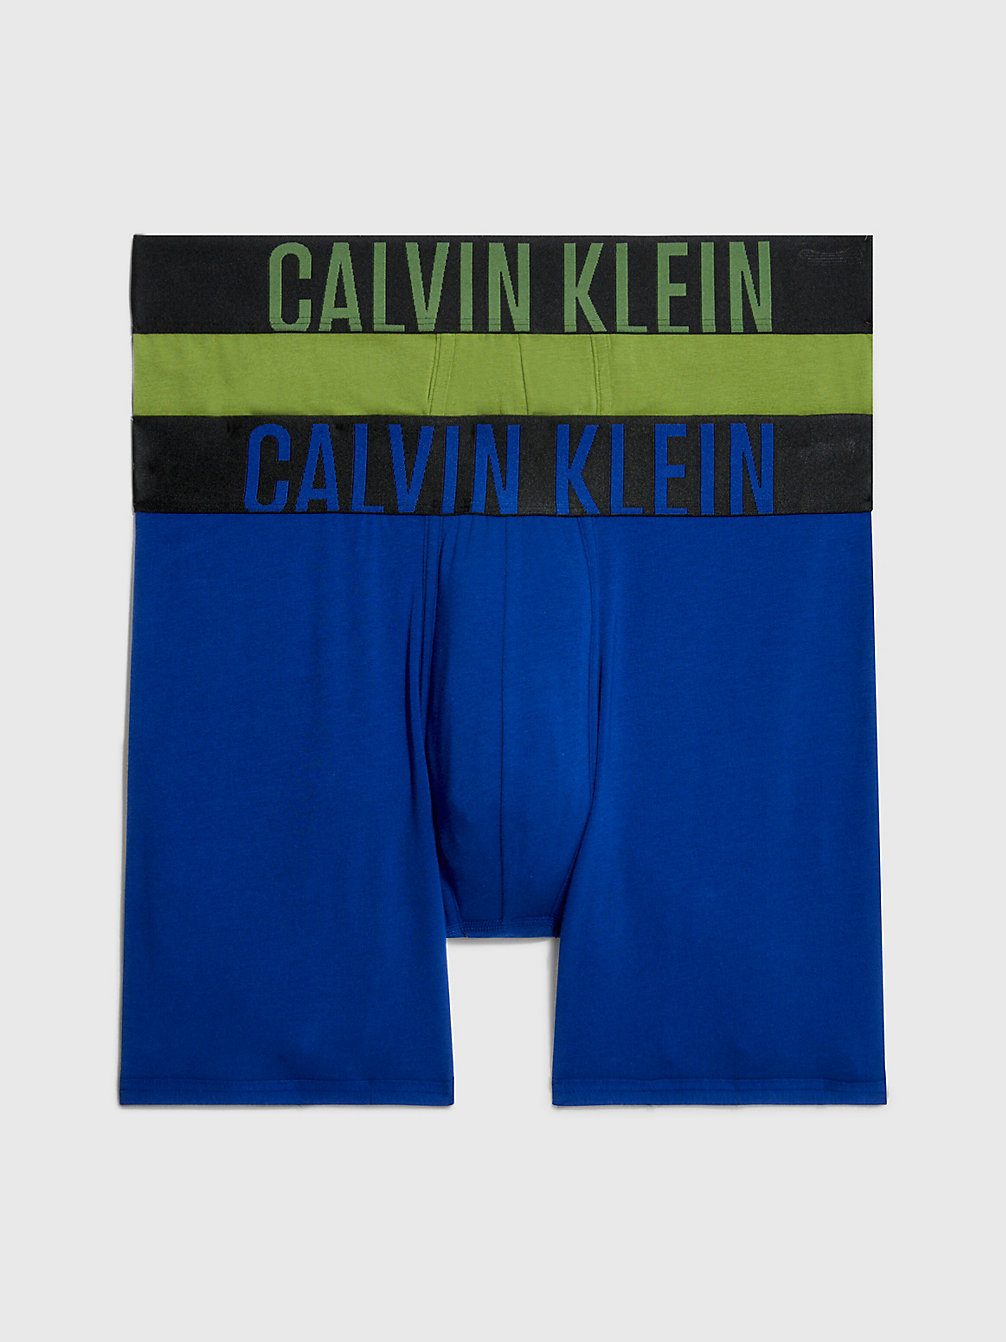 Boxer Aderenti Lunghi In Confezione Da 2 - Intense Power > MIDNIGHT BLUE, UNIQUE JADE > undefined uomo > Calvin Klein